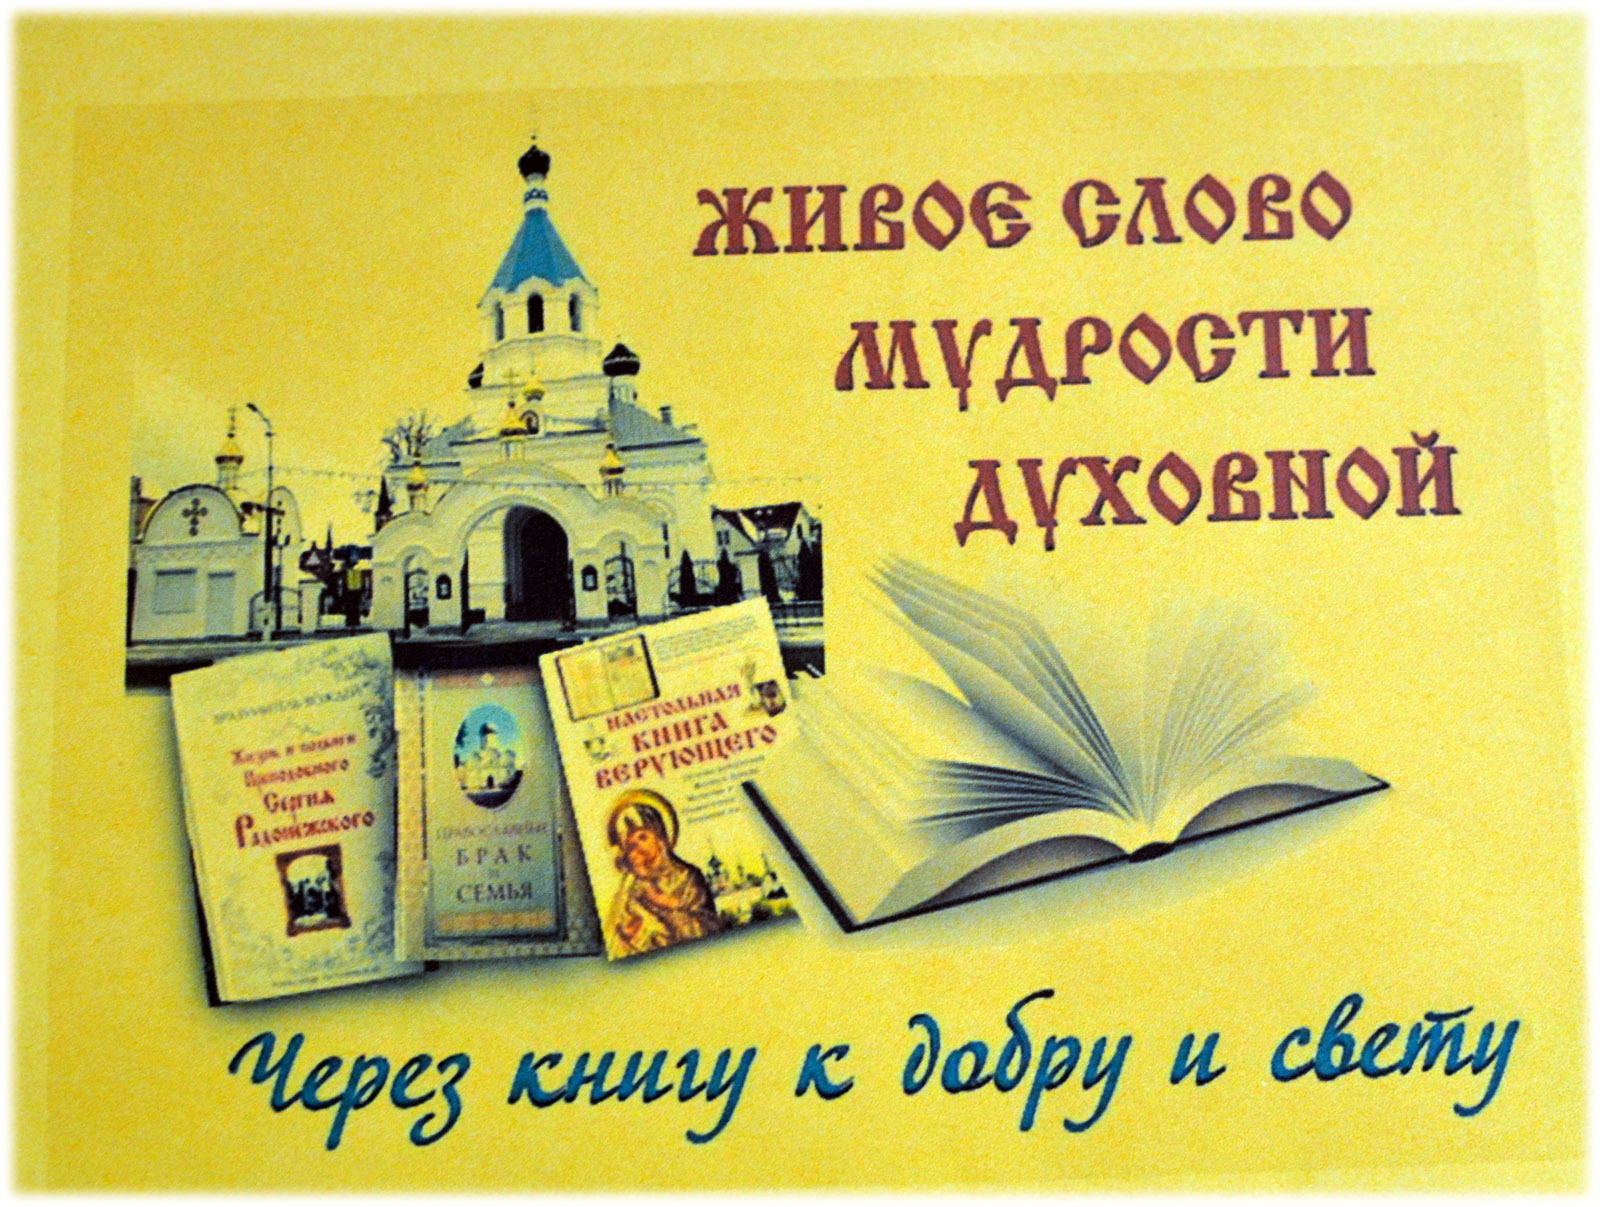 Православные книги благовест